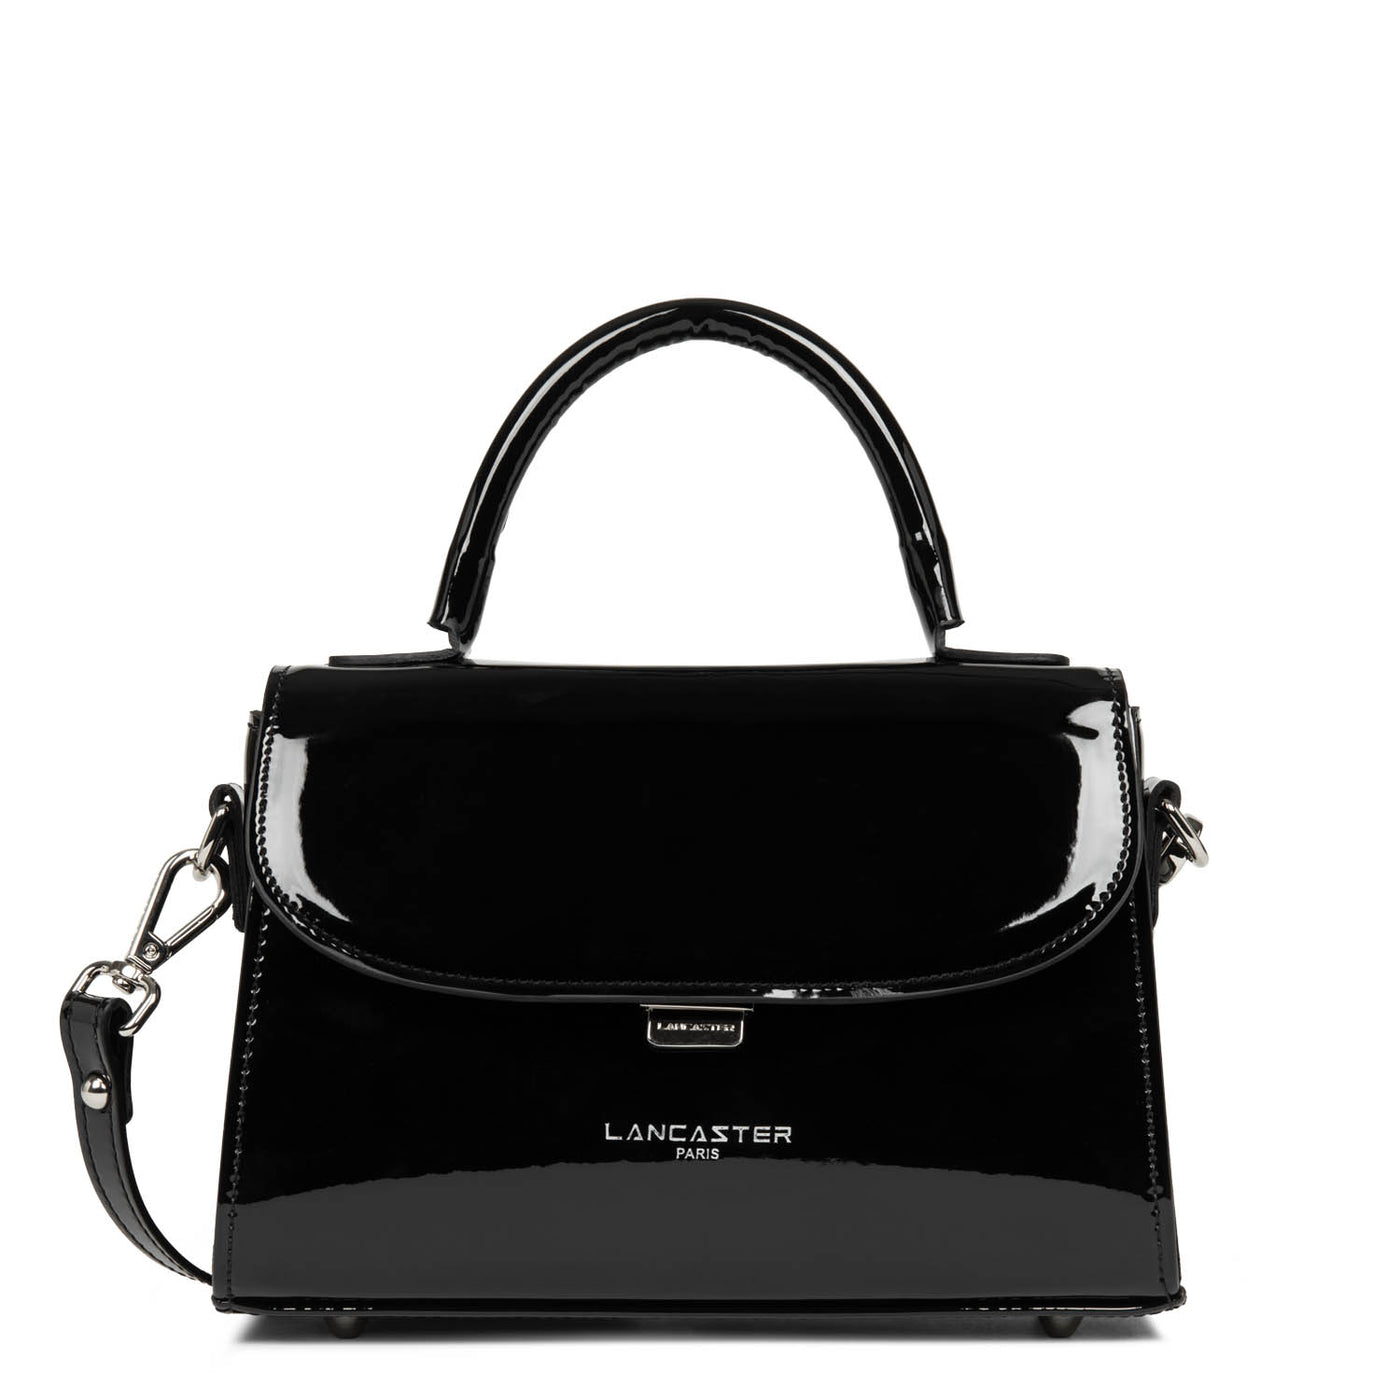 handbag - glass irio #couleur_noir